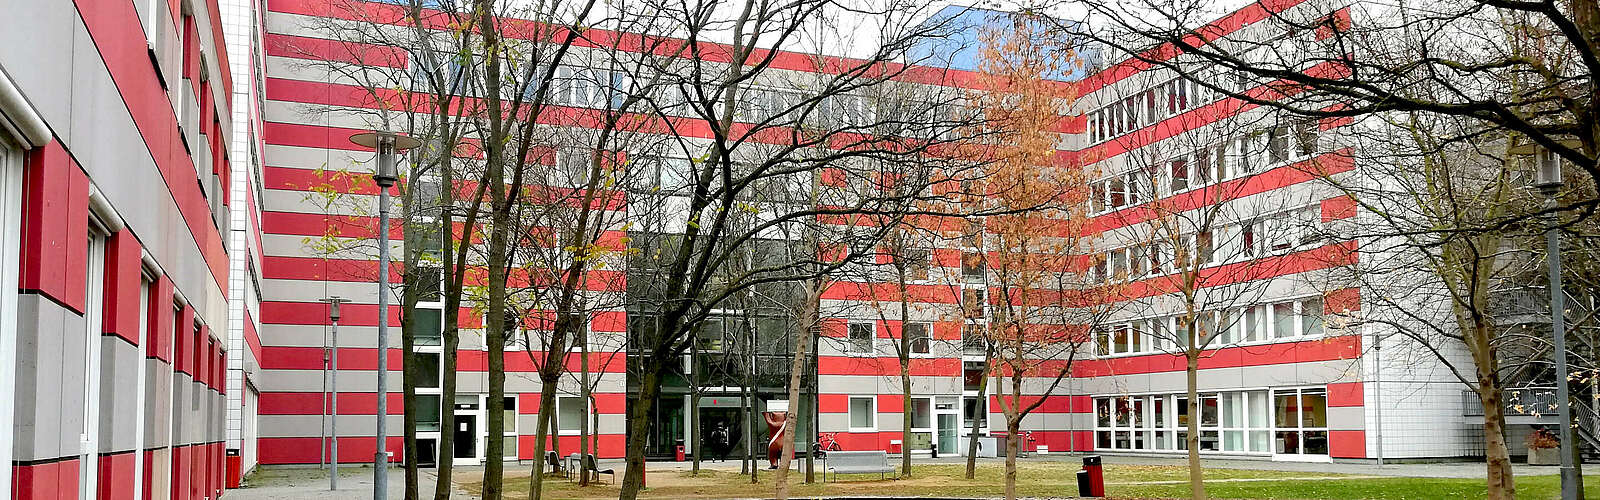 Hochschule für Wirtschaft und Recht, Gebäude 6B,
        
    

        Foto: Tourismusverband Dahme-Seen e.V./Pauline Kaiser